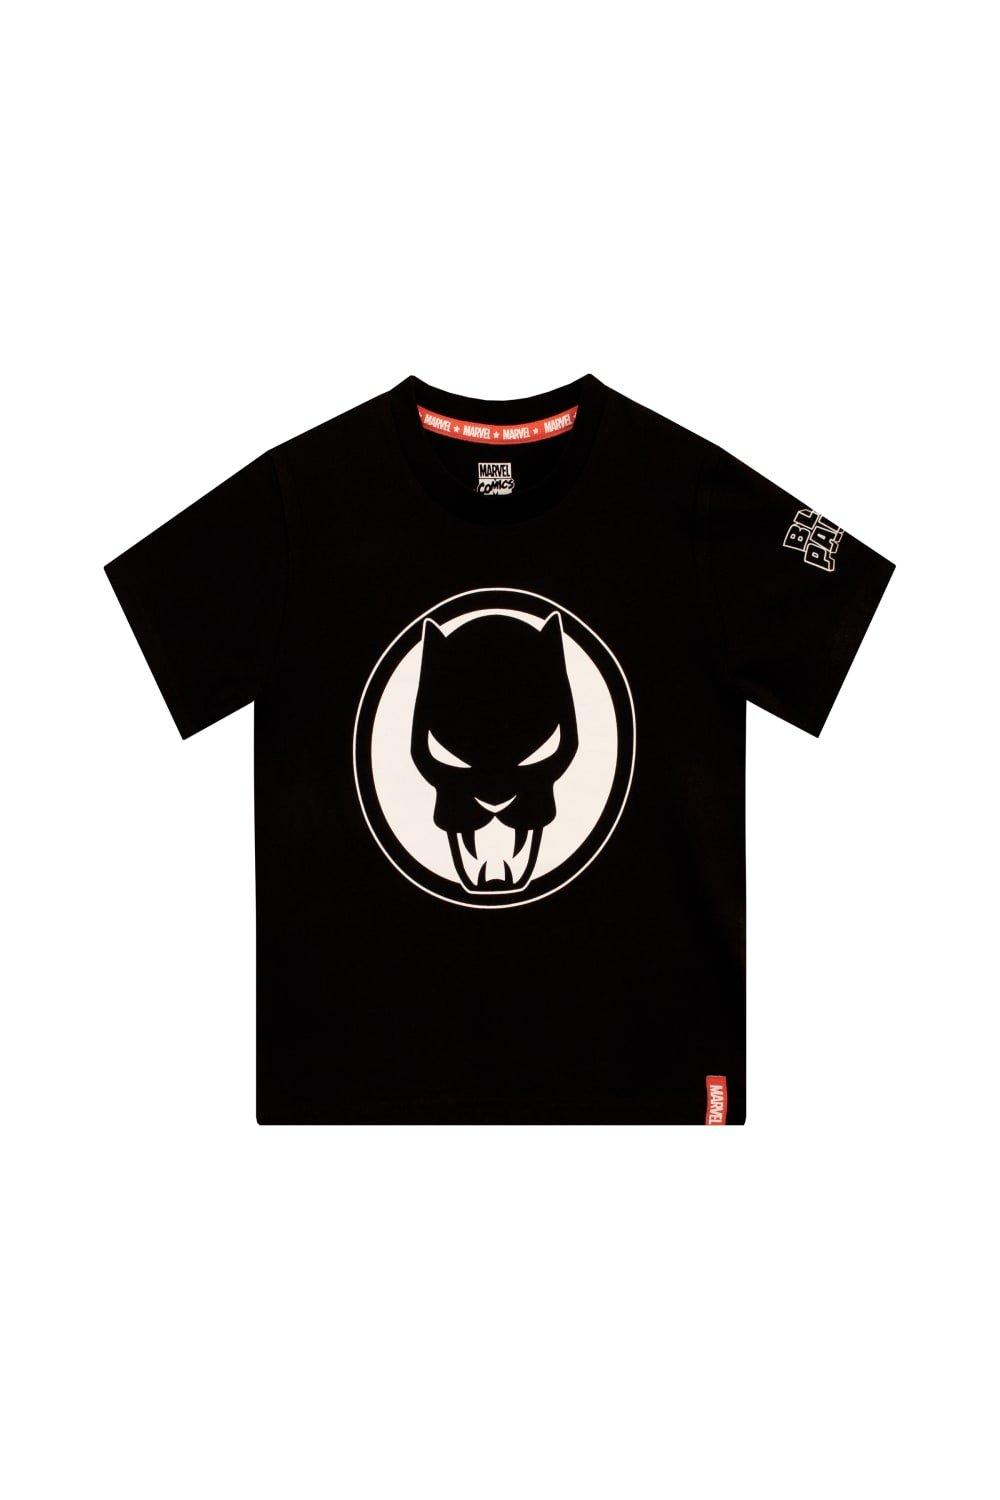 Футболка с логотипом «Черная пантера» Marvel, черный сумка шоппер унисекс сувенирshop черная пантера black panther marvel черная